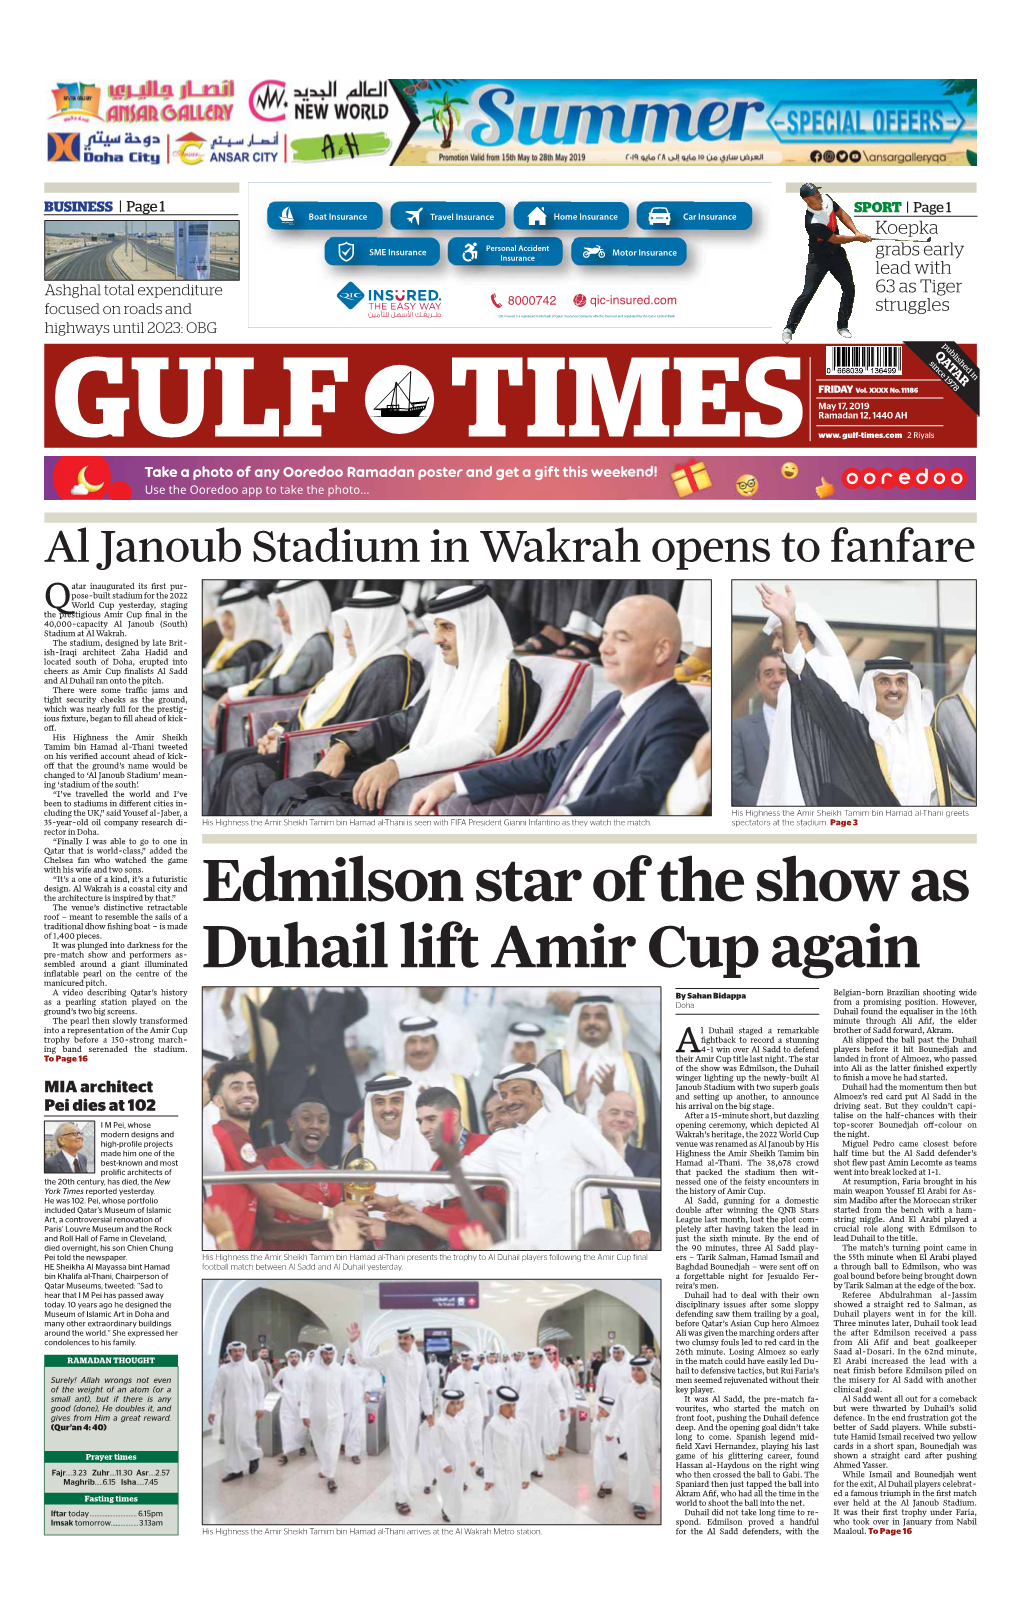 Edmilson Star of the Show As Duhail Lift Amir Cup Again